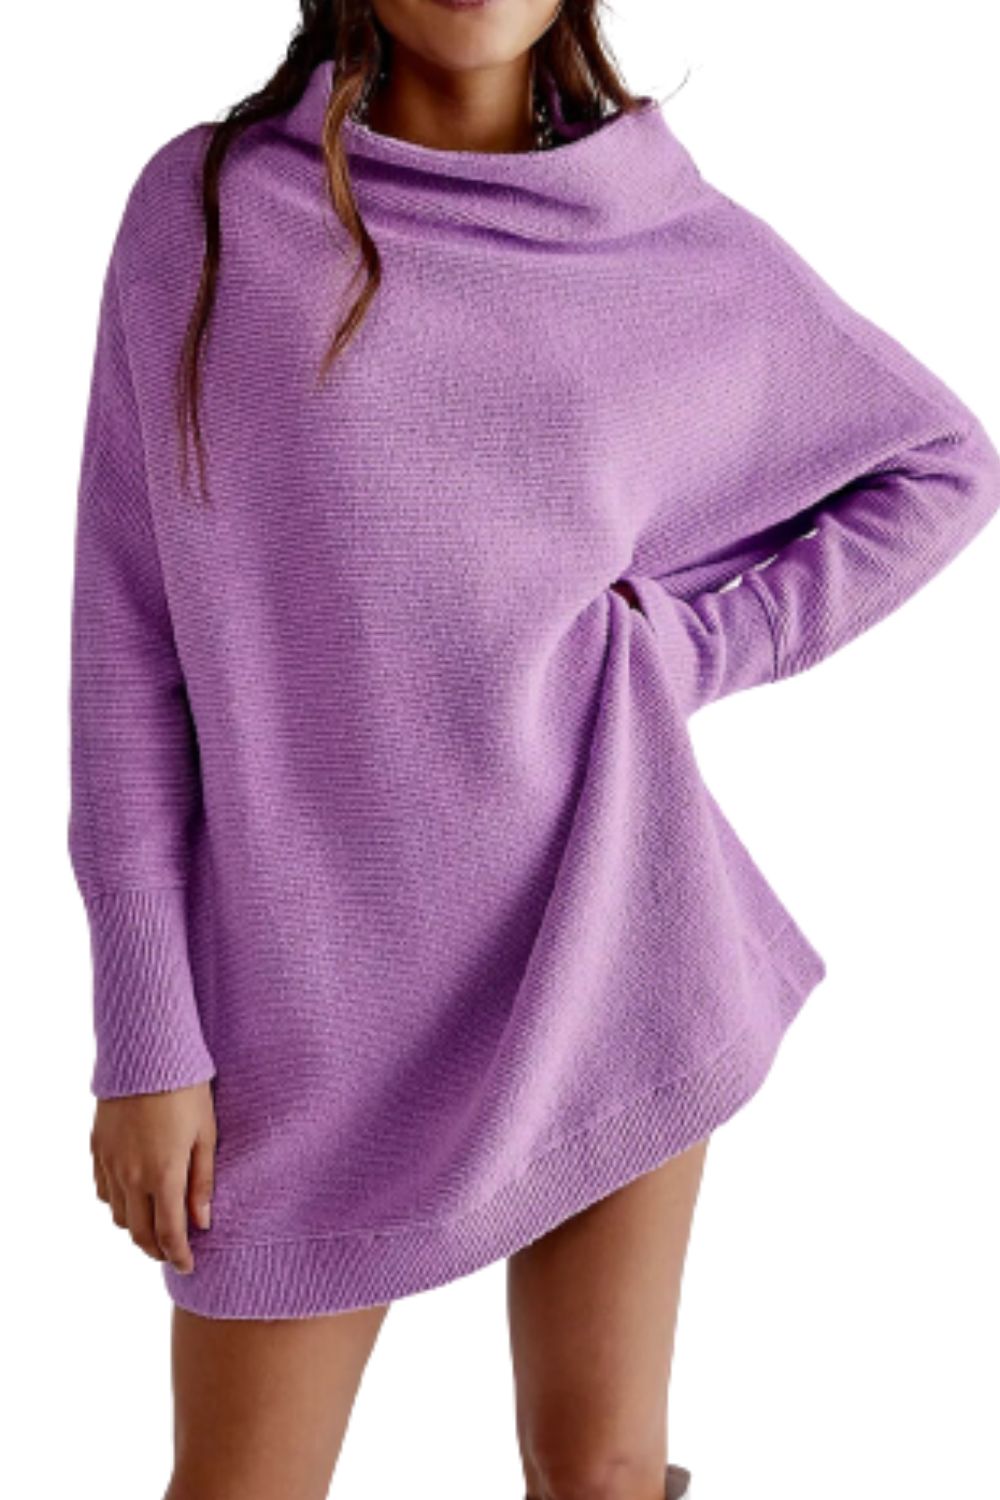 Free People Sweater Womens Large Purple Ottoman Slouchy Tunic Cotton Oversized